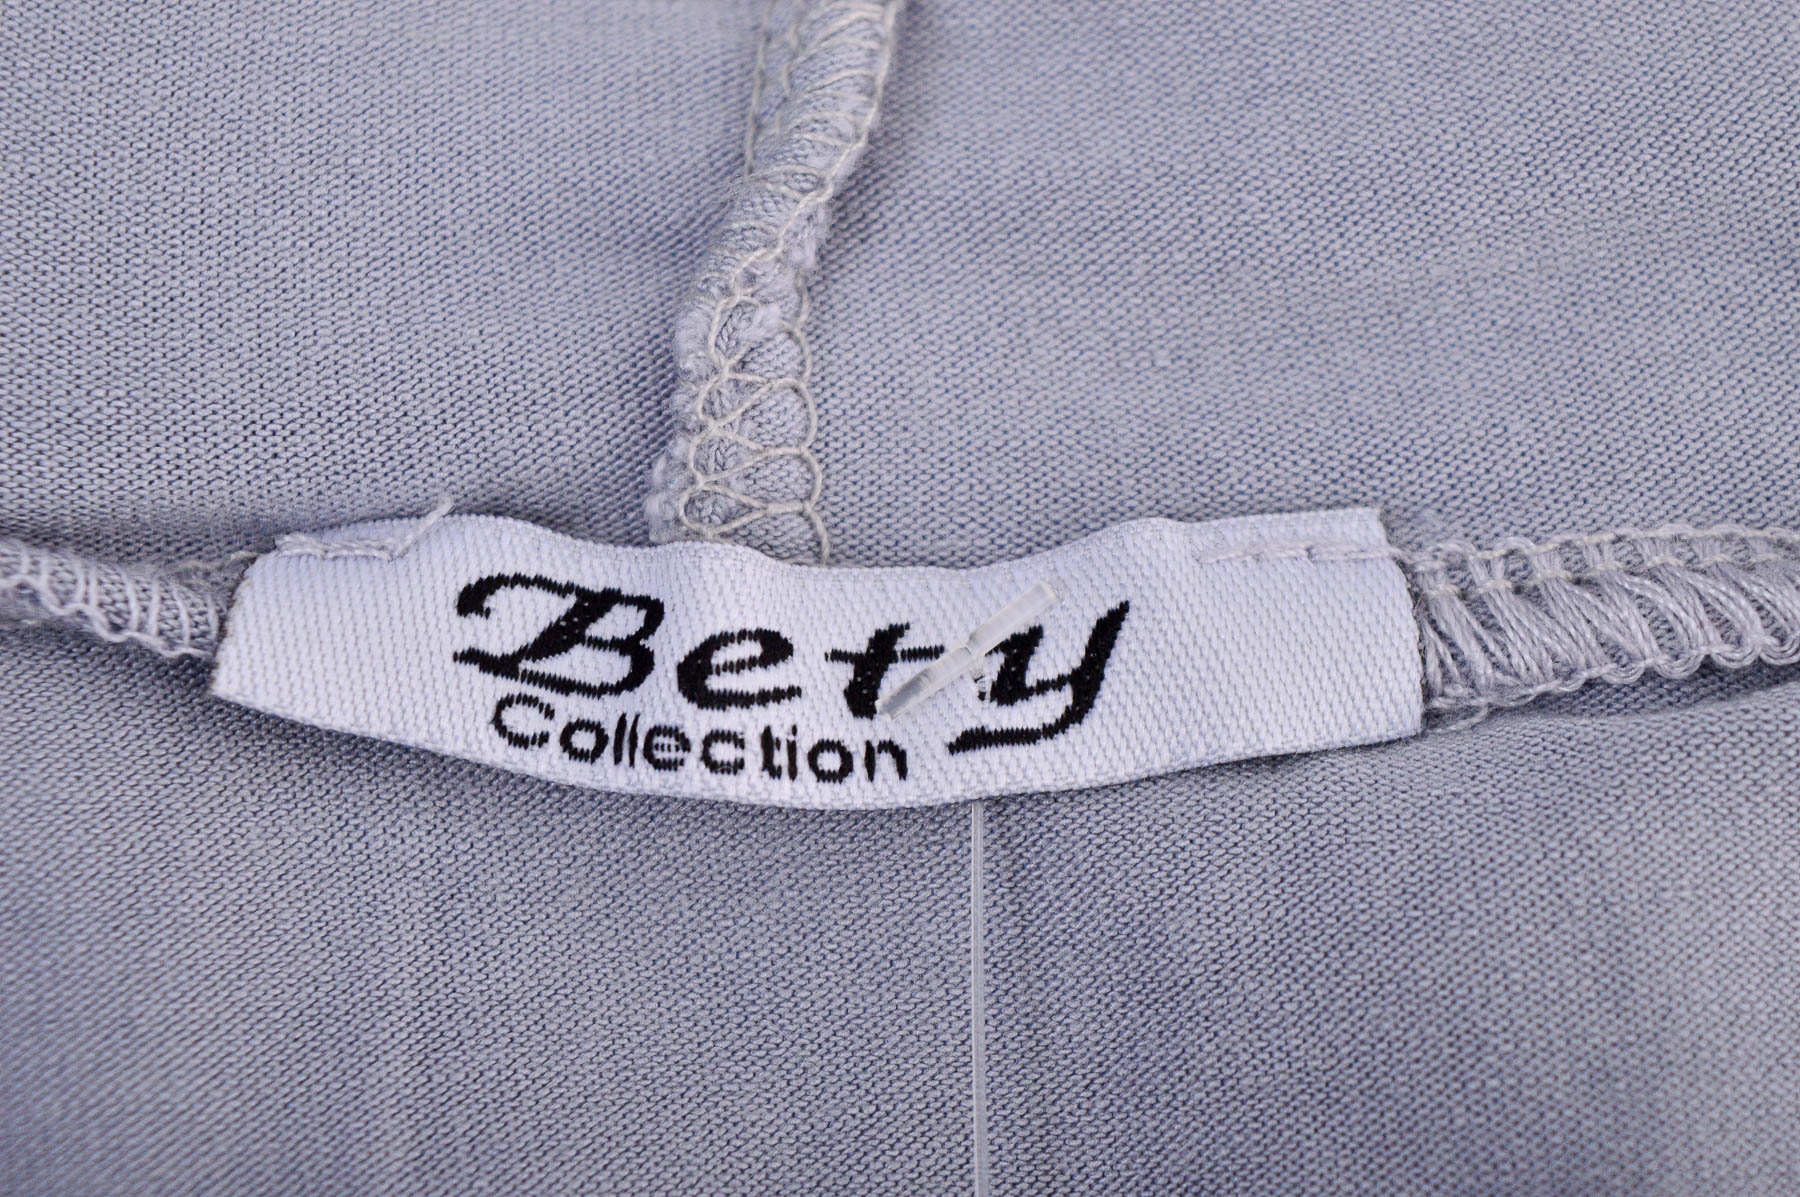 Γυναικεία μπλούζα - Bety Collection - 2